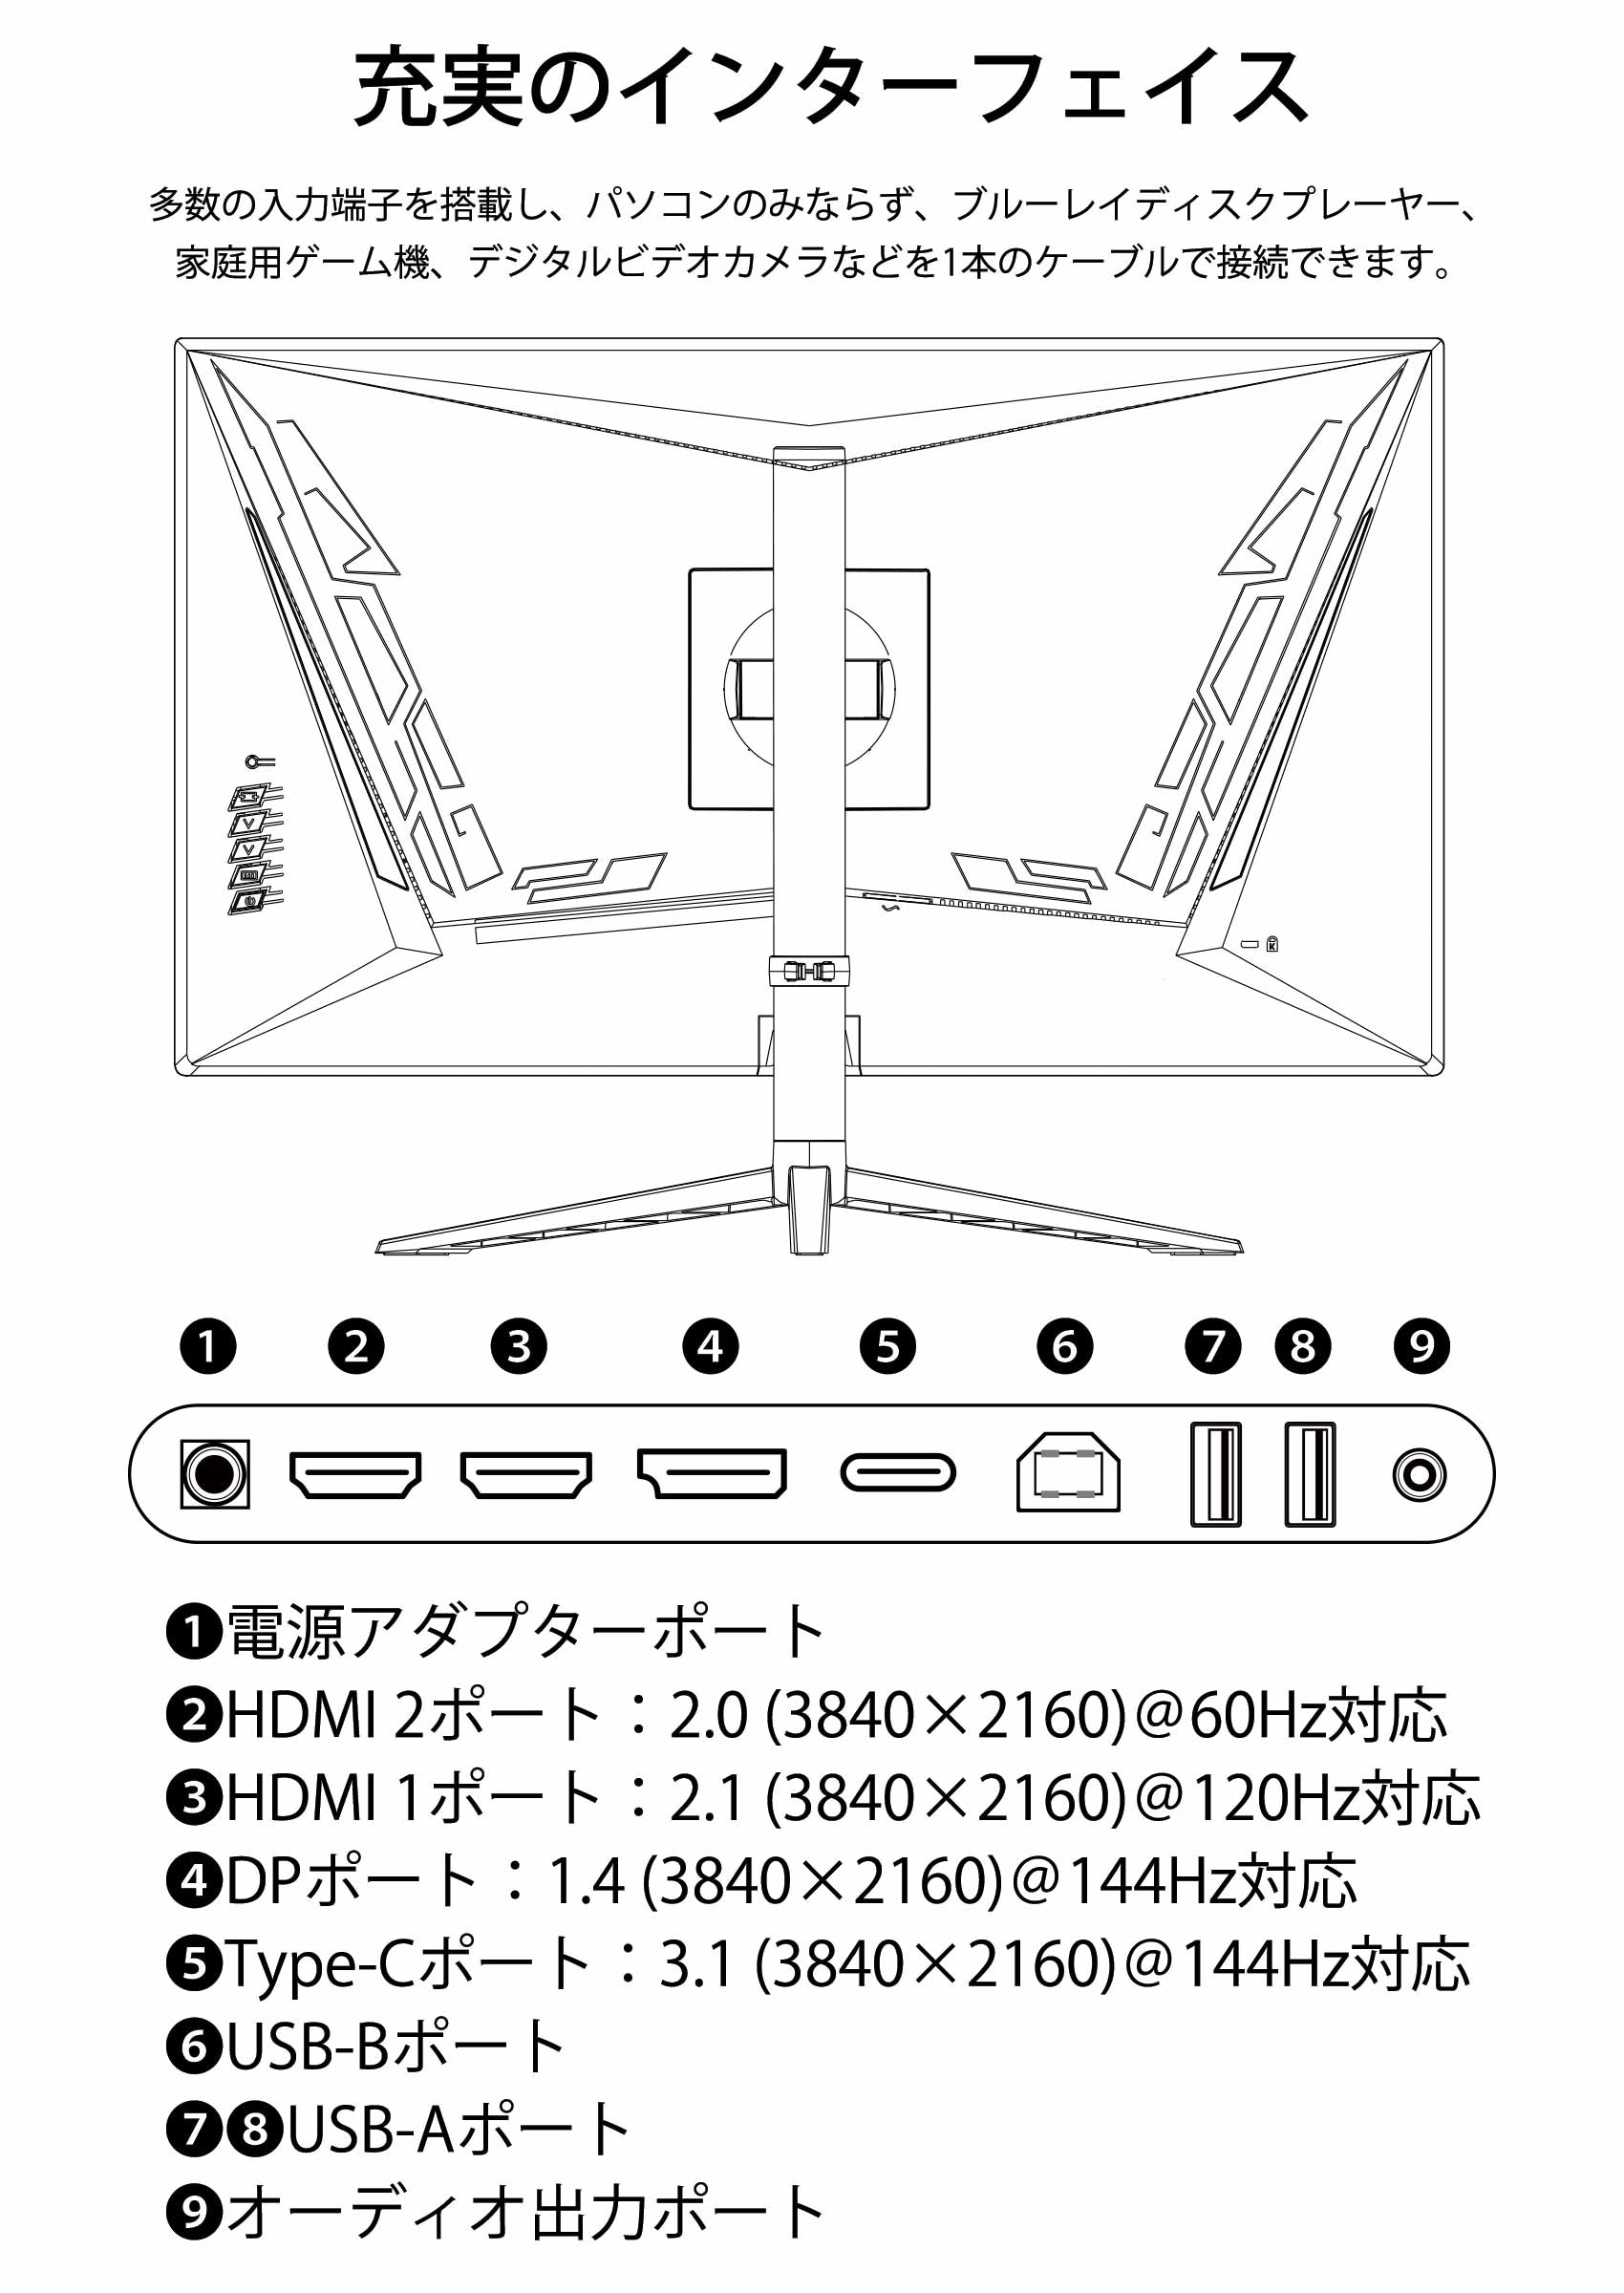 JAPANNEXT 28インチゲーミングモニター HDMI2.1対応 4K(3840 x 2160